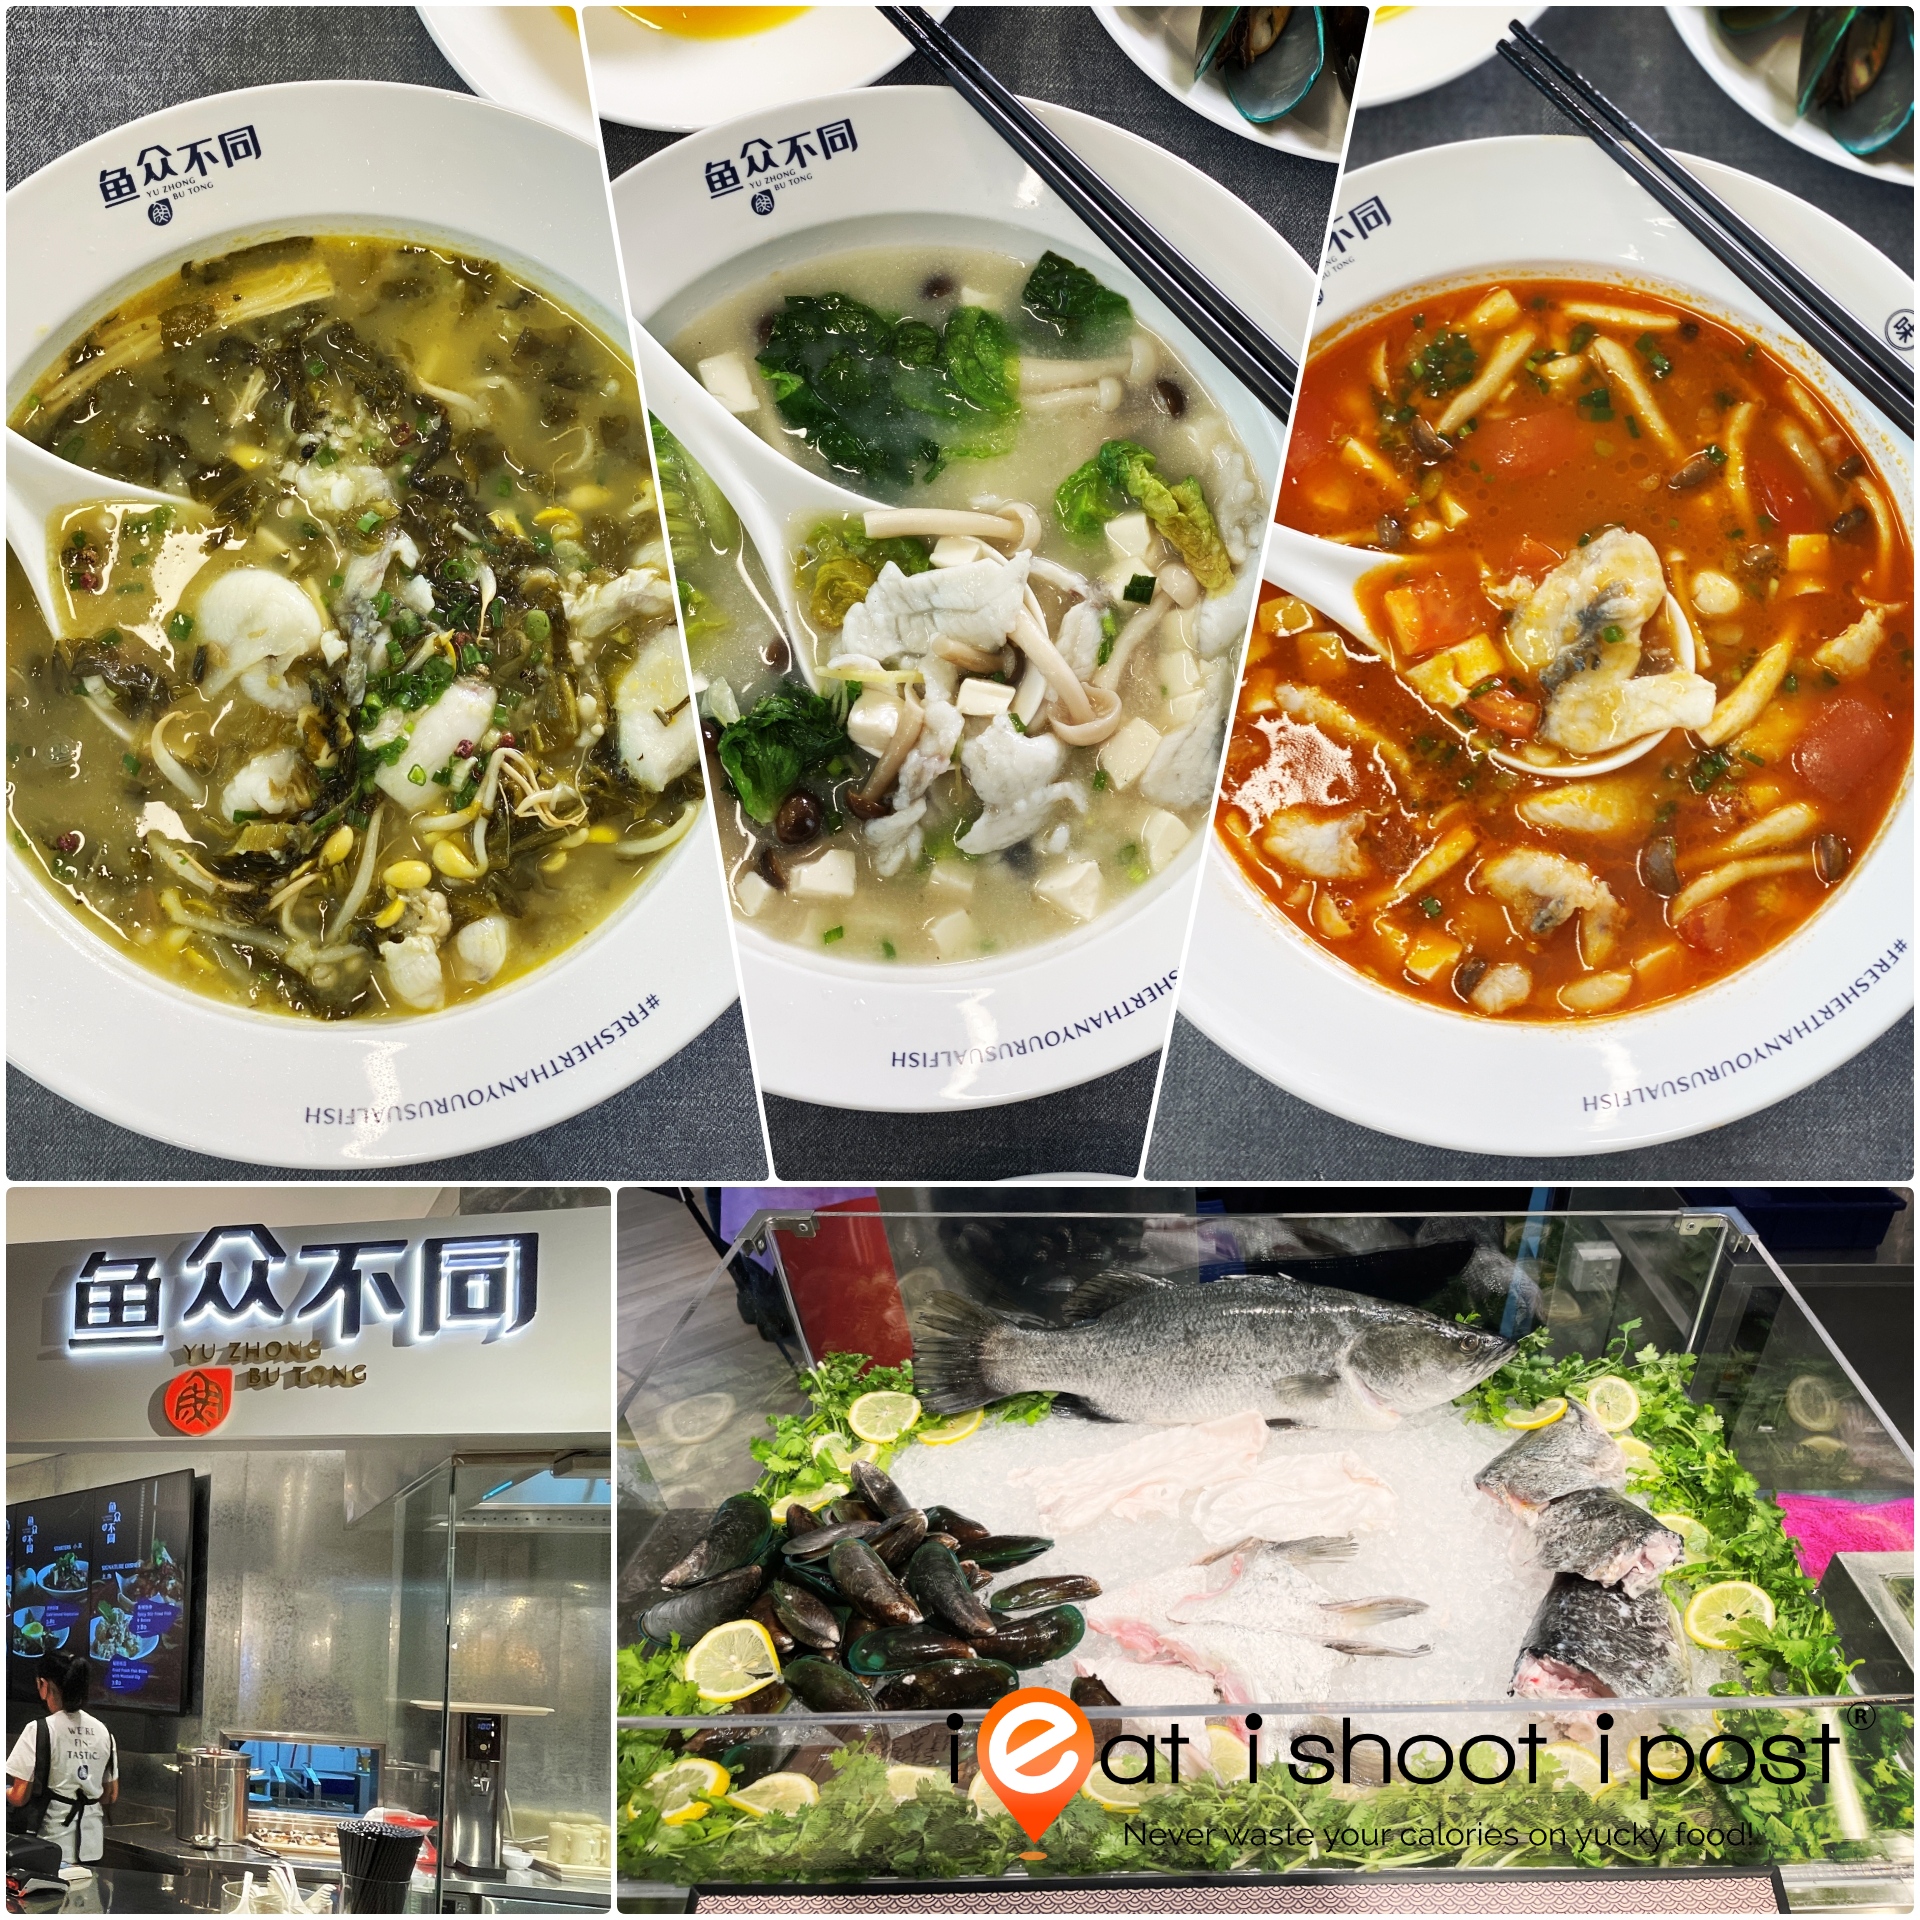 Yu Zhong Bu Tong: Sauerkraut Fish Soup, Collagen Fish Soup and Tomato Fish Soup